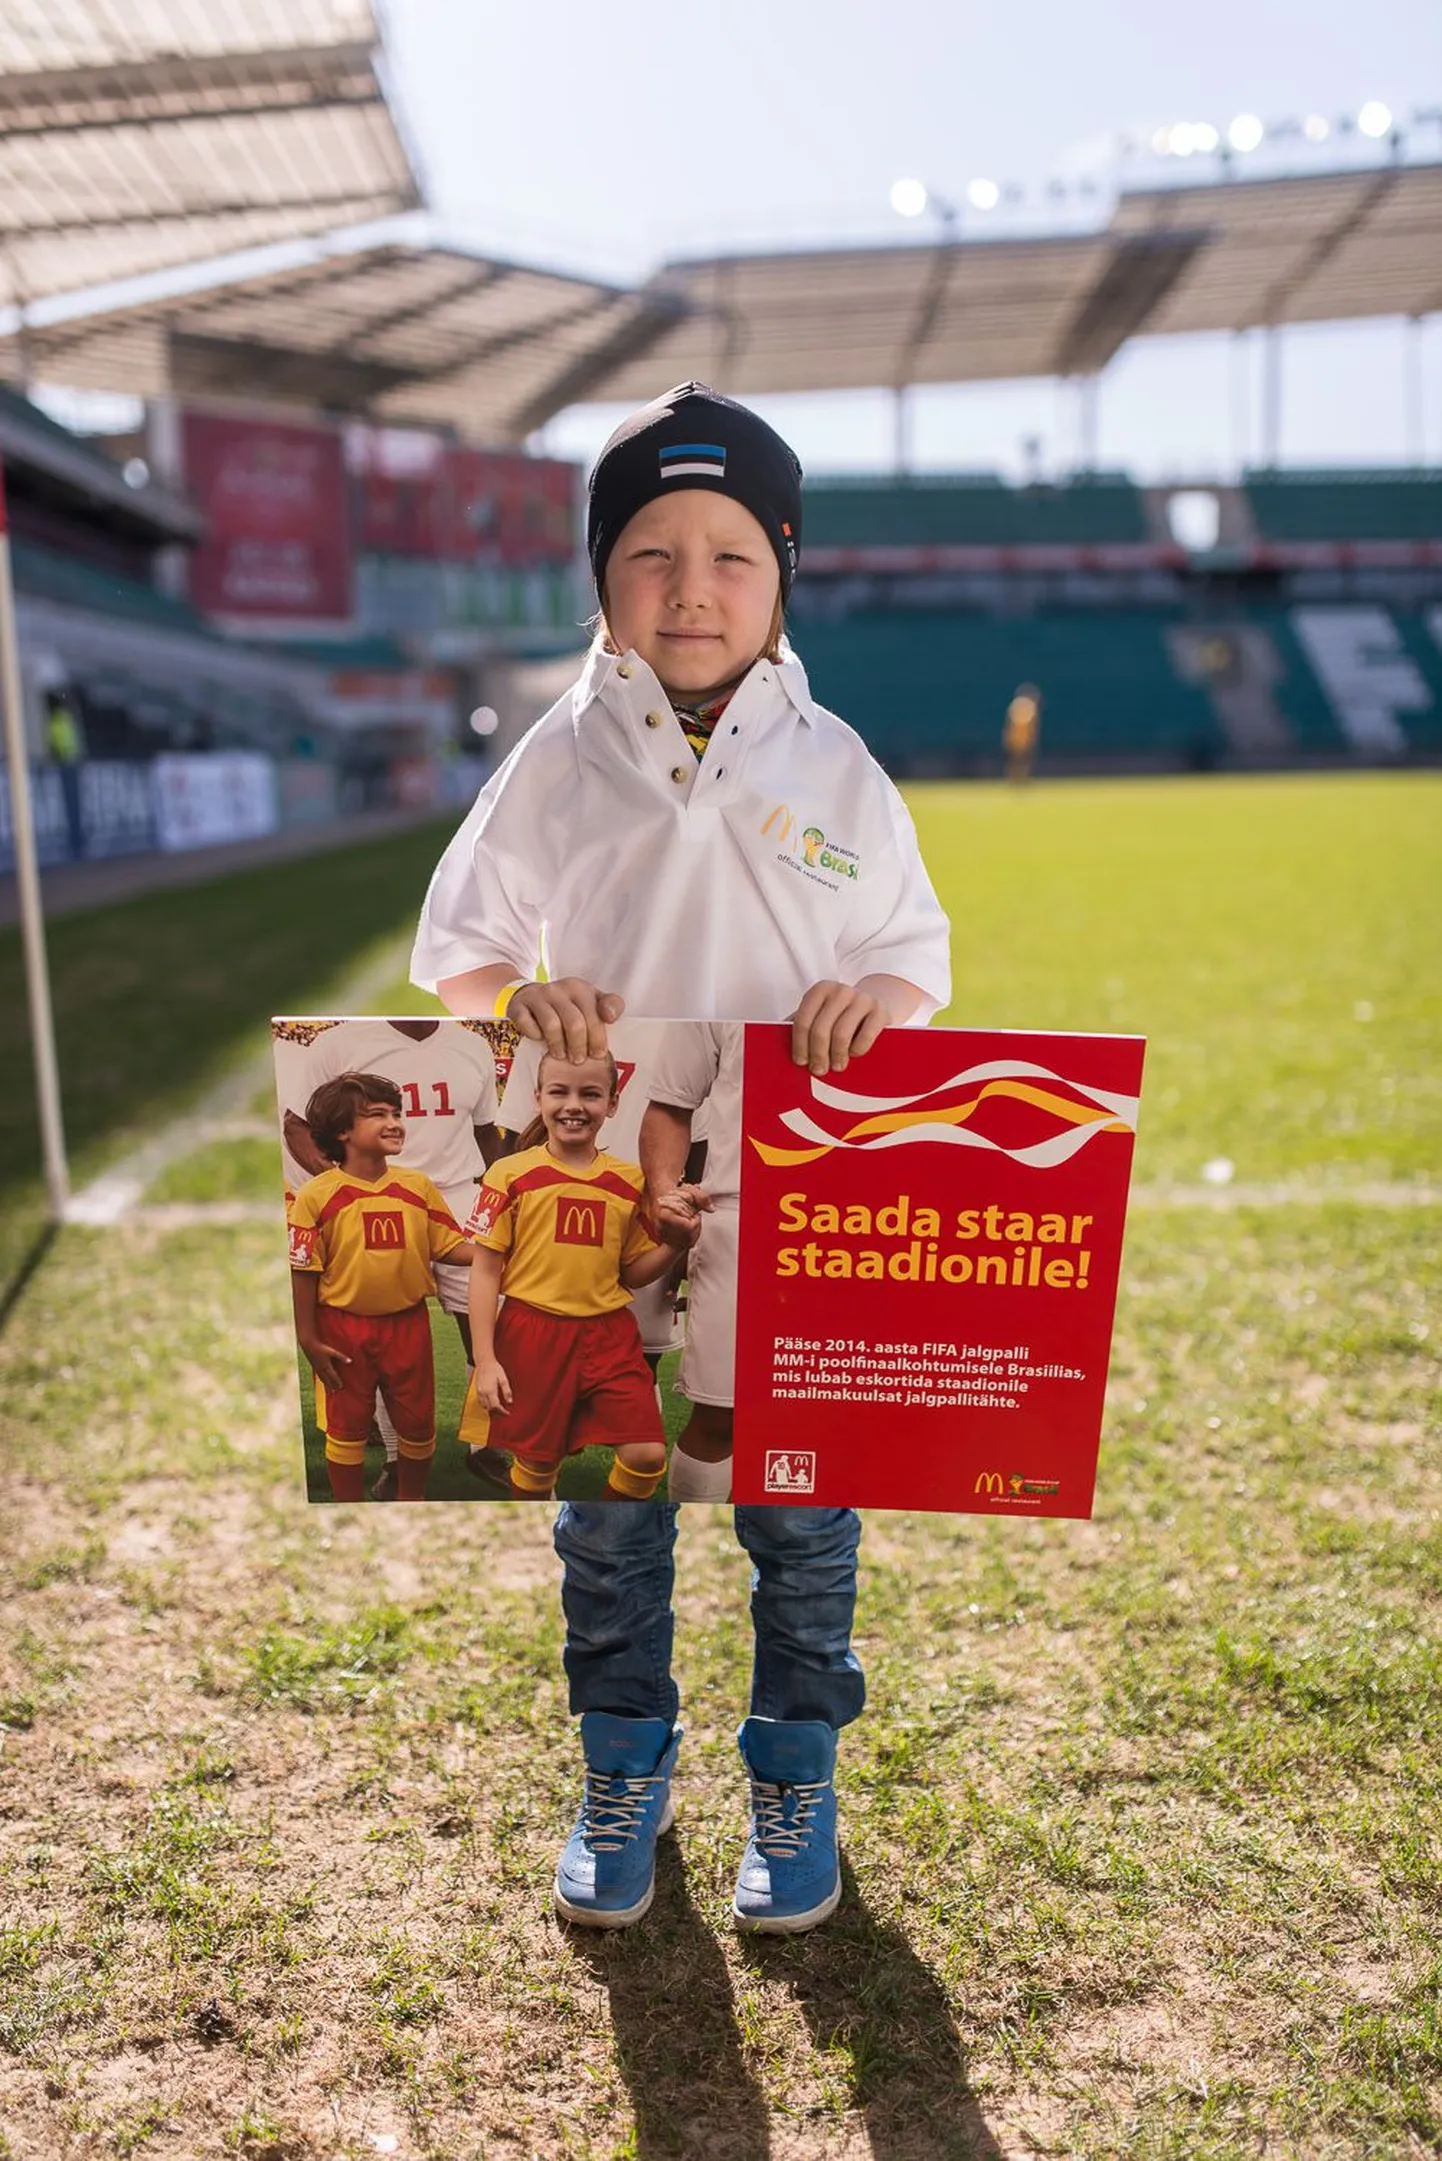 McDonald's отправляет на ЧМ по футболу в Бразилию 6-летнего Лукаса Эло.